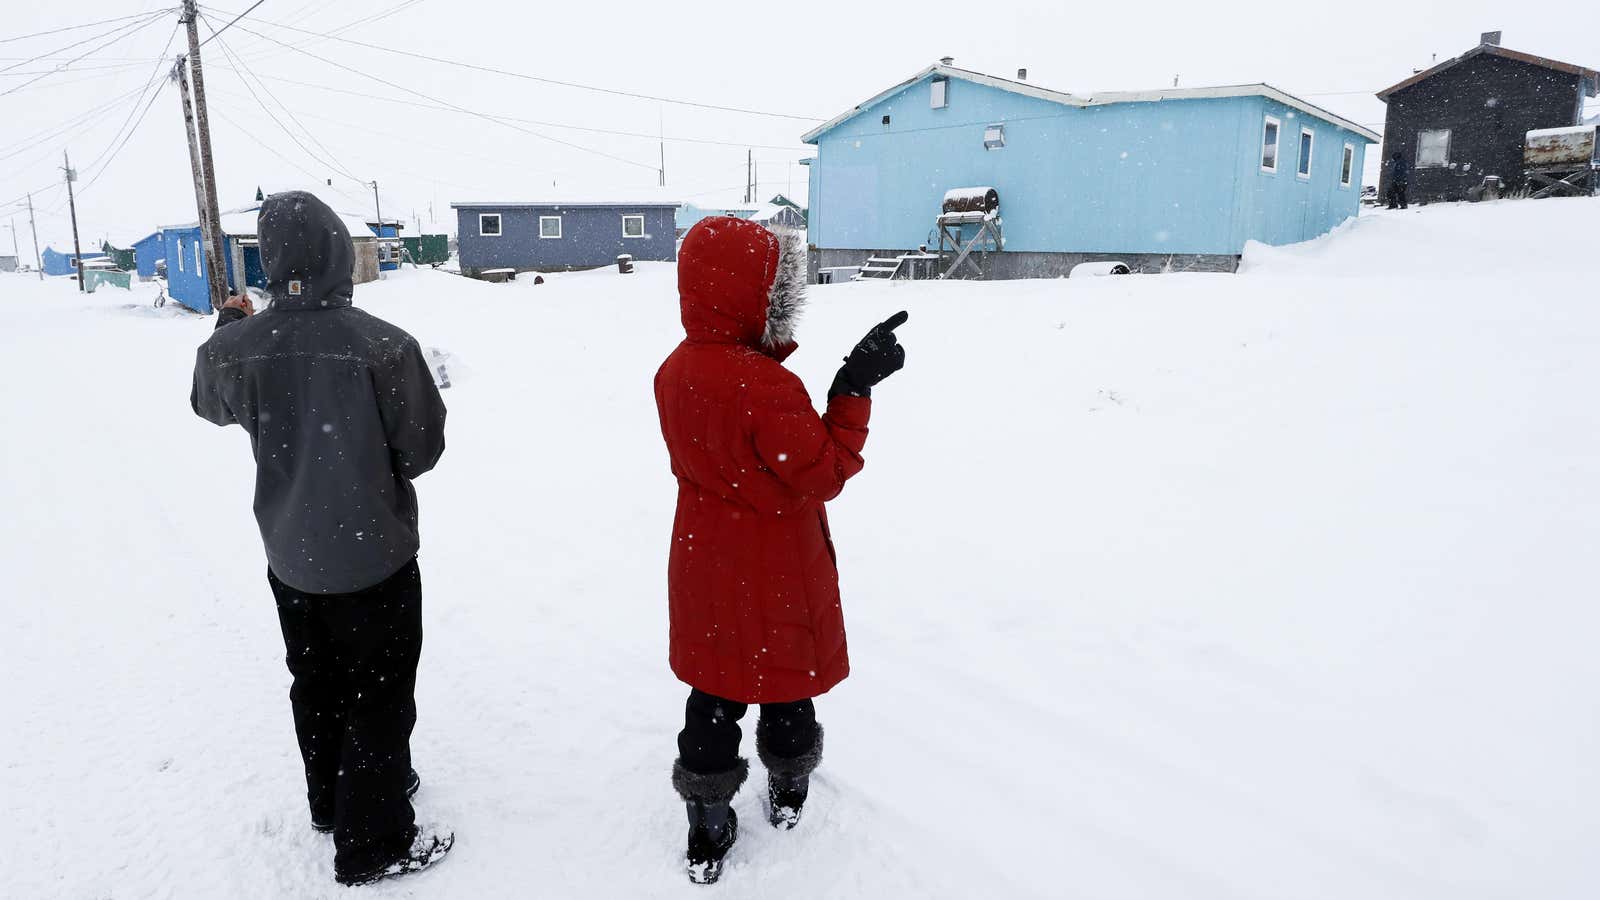 The census begins—earlier this week in Toksook Bay, Alaska.